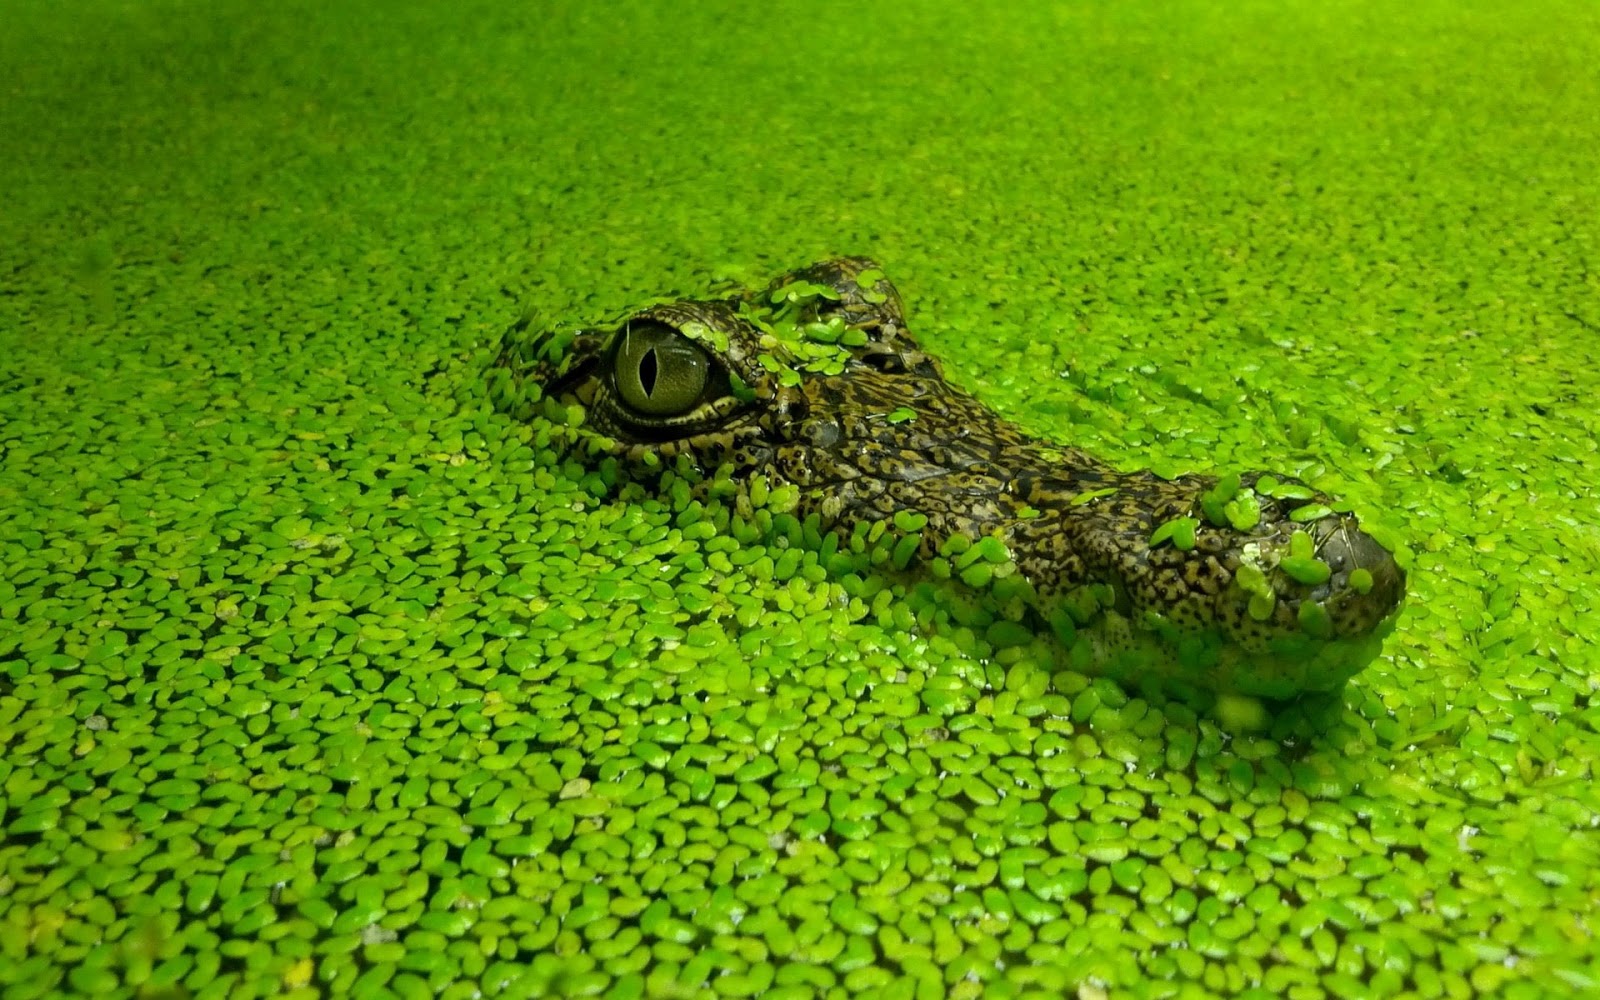 crocodile wallpaper hd,green,crocodilia,crocodile,grass,reptile